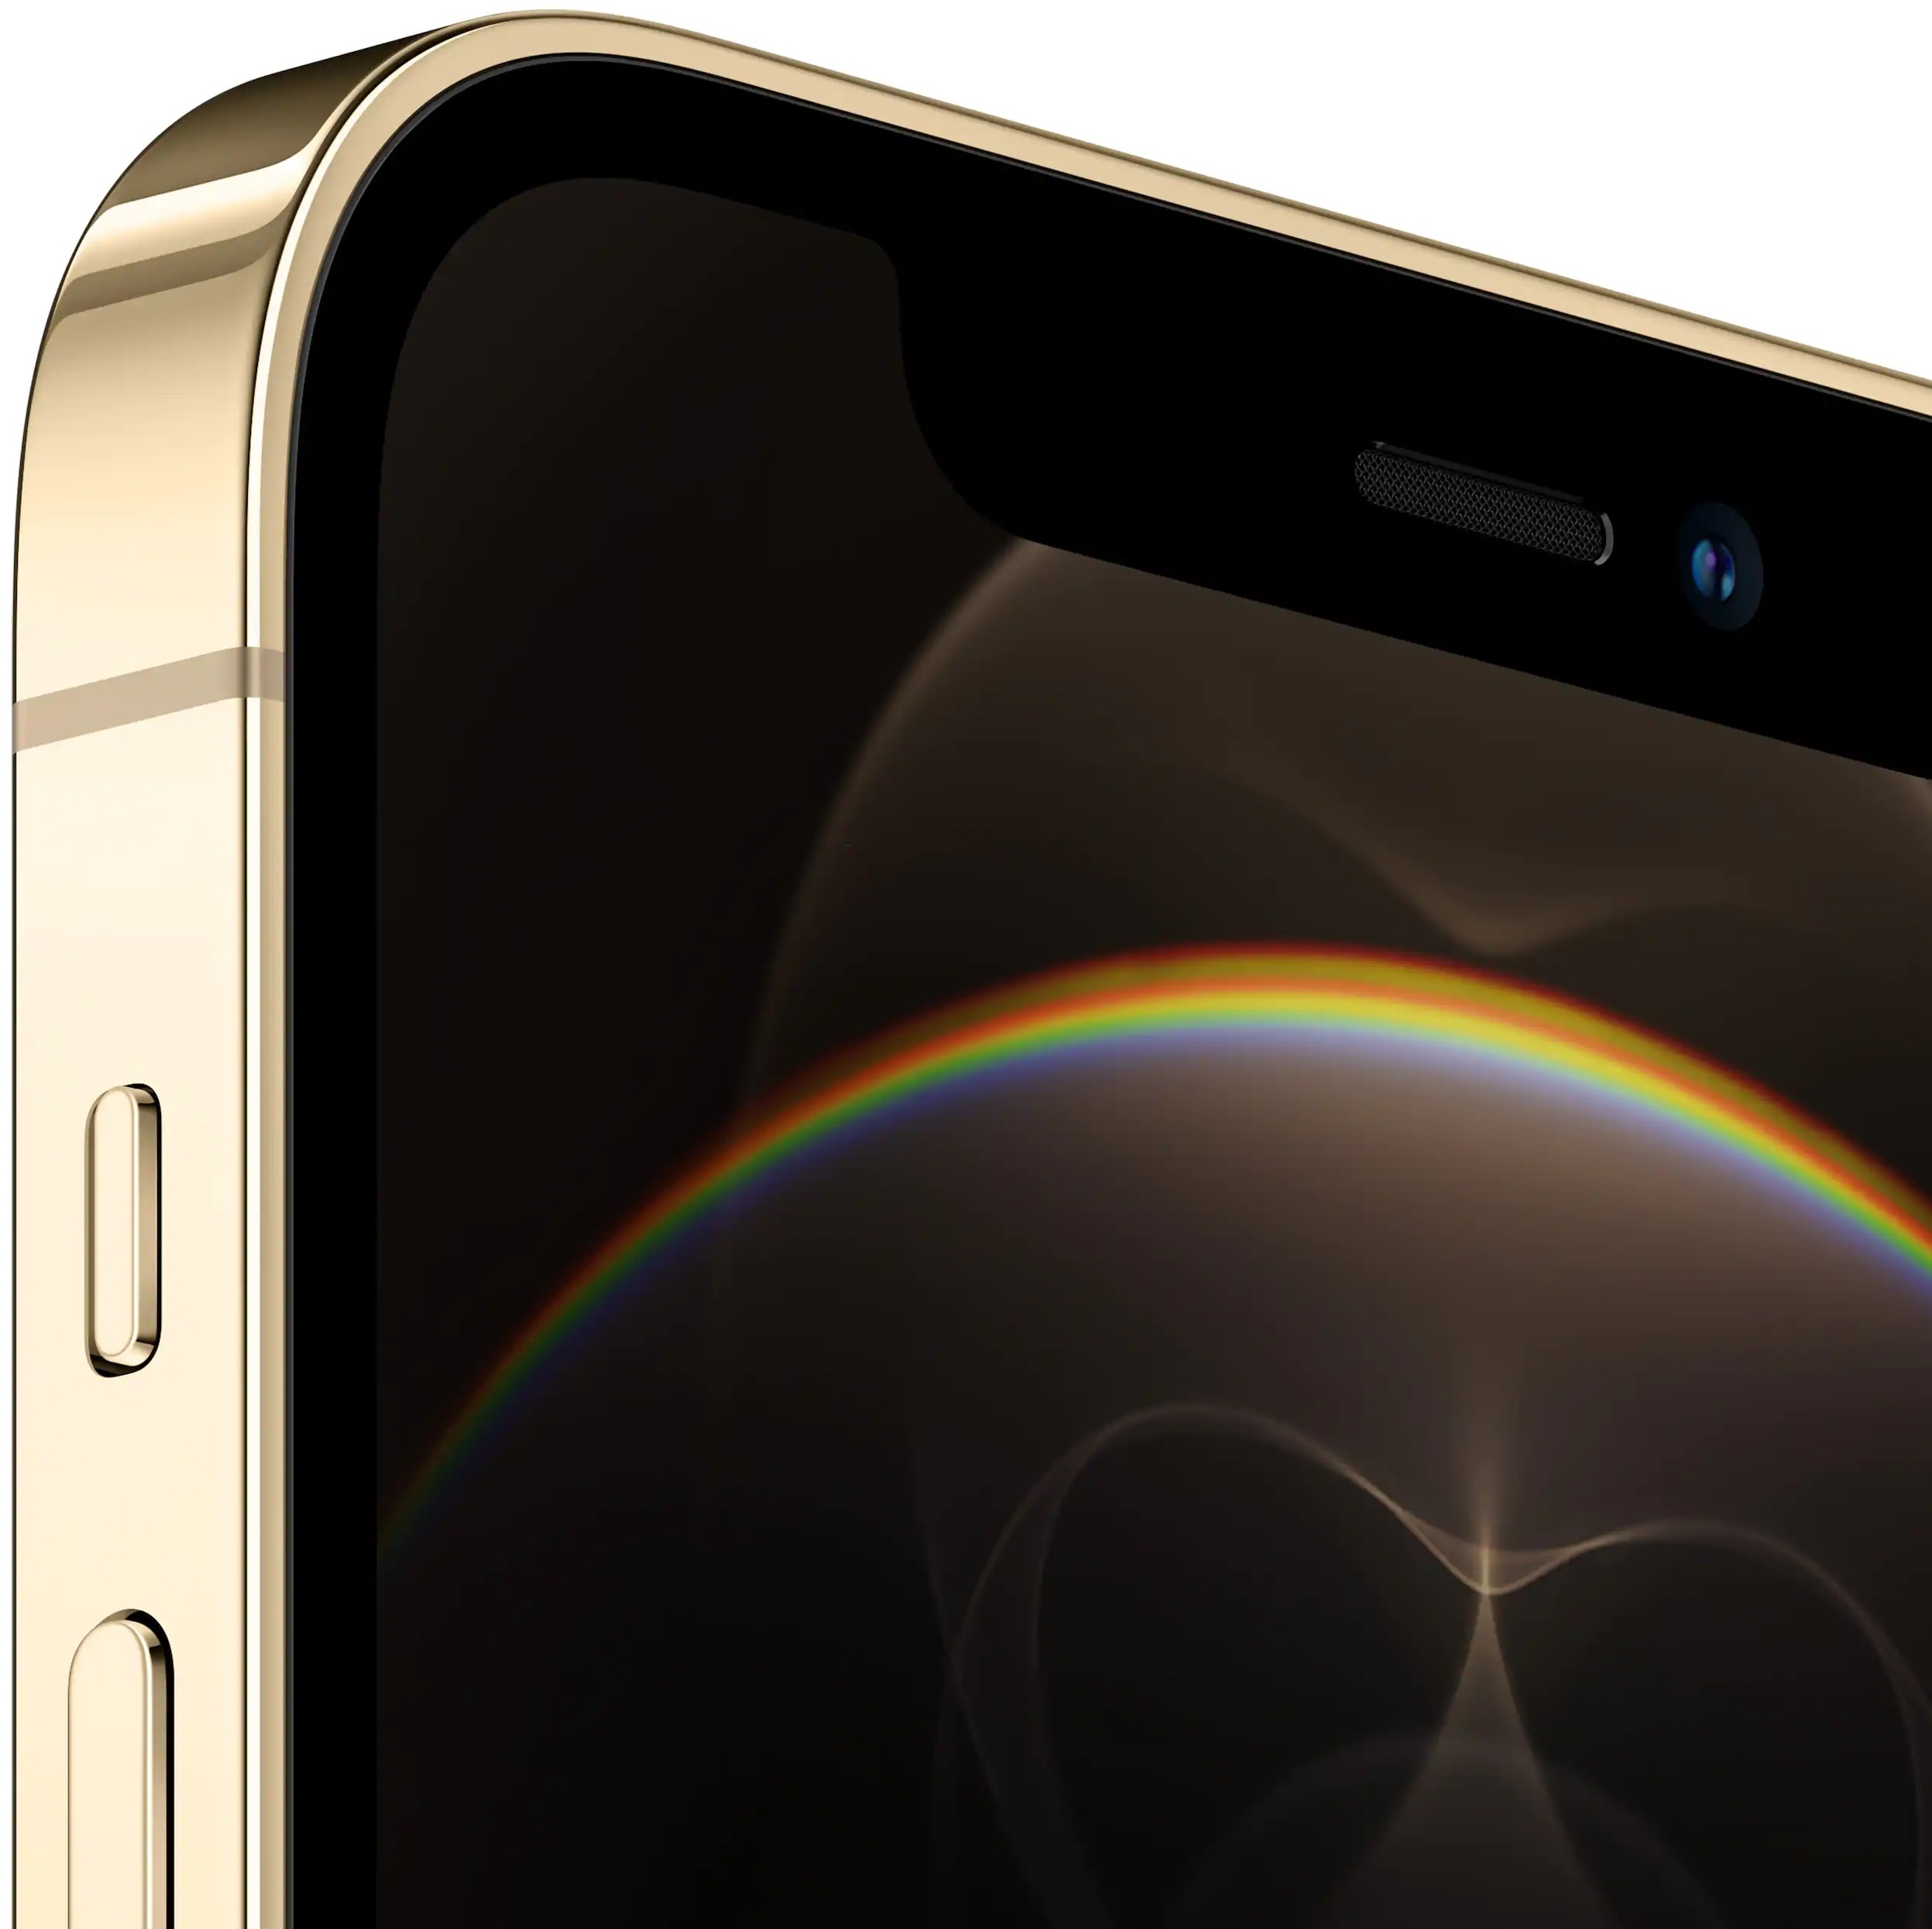 Apple iPhone 12 Pro 512 GB gold ab 1.069,00 € im Preisvergleich!